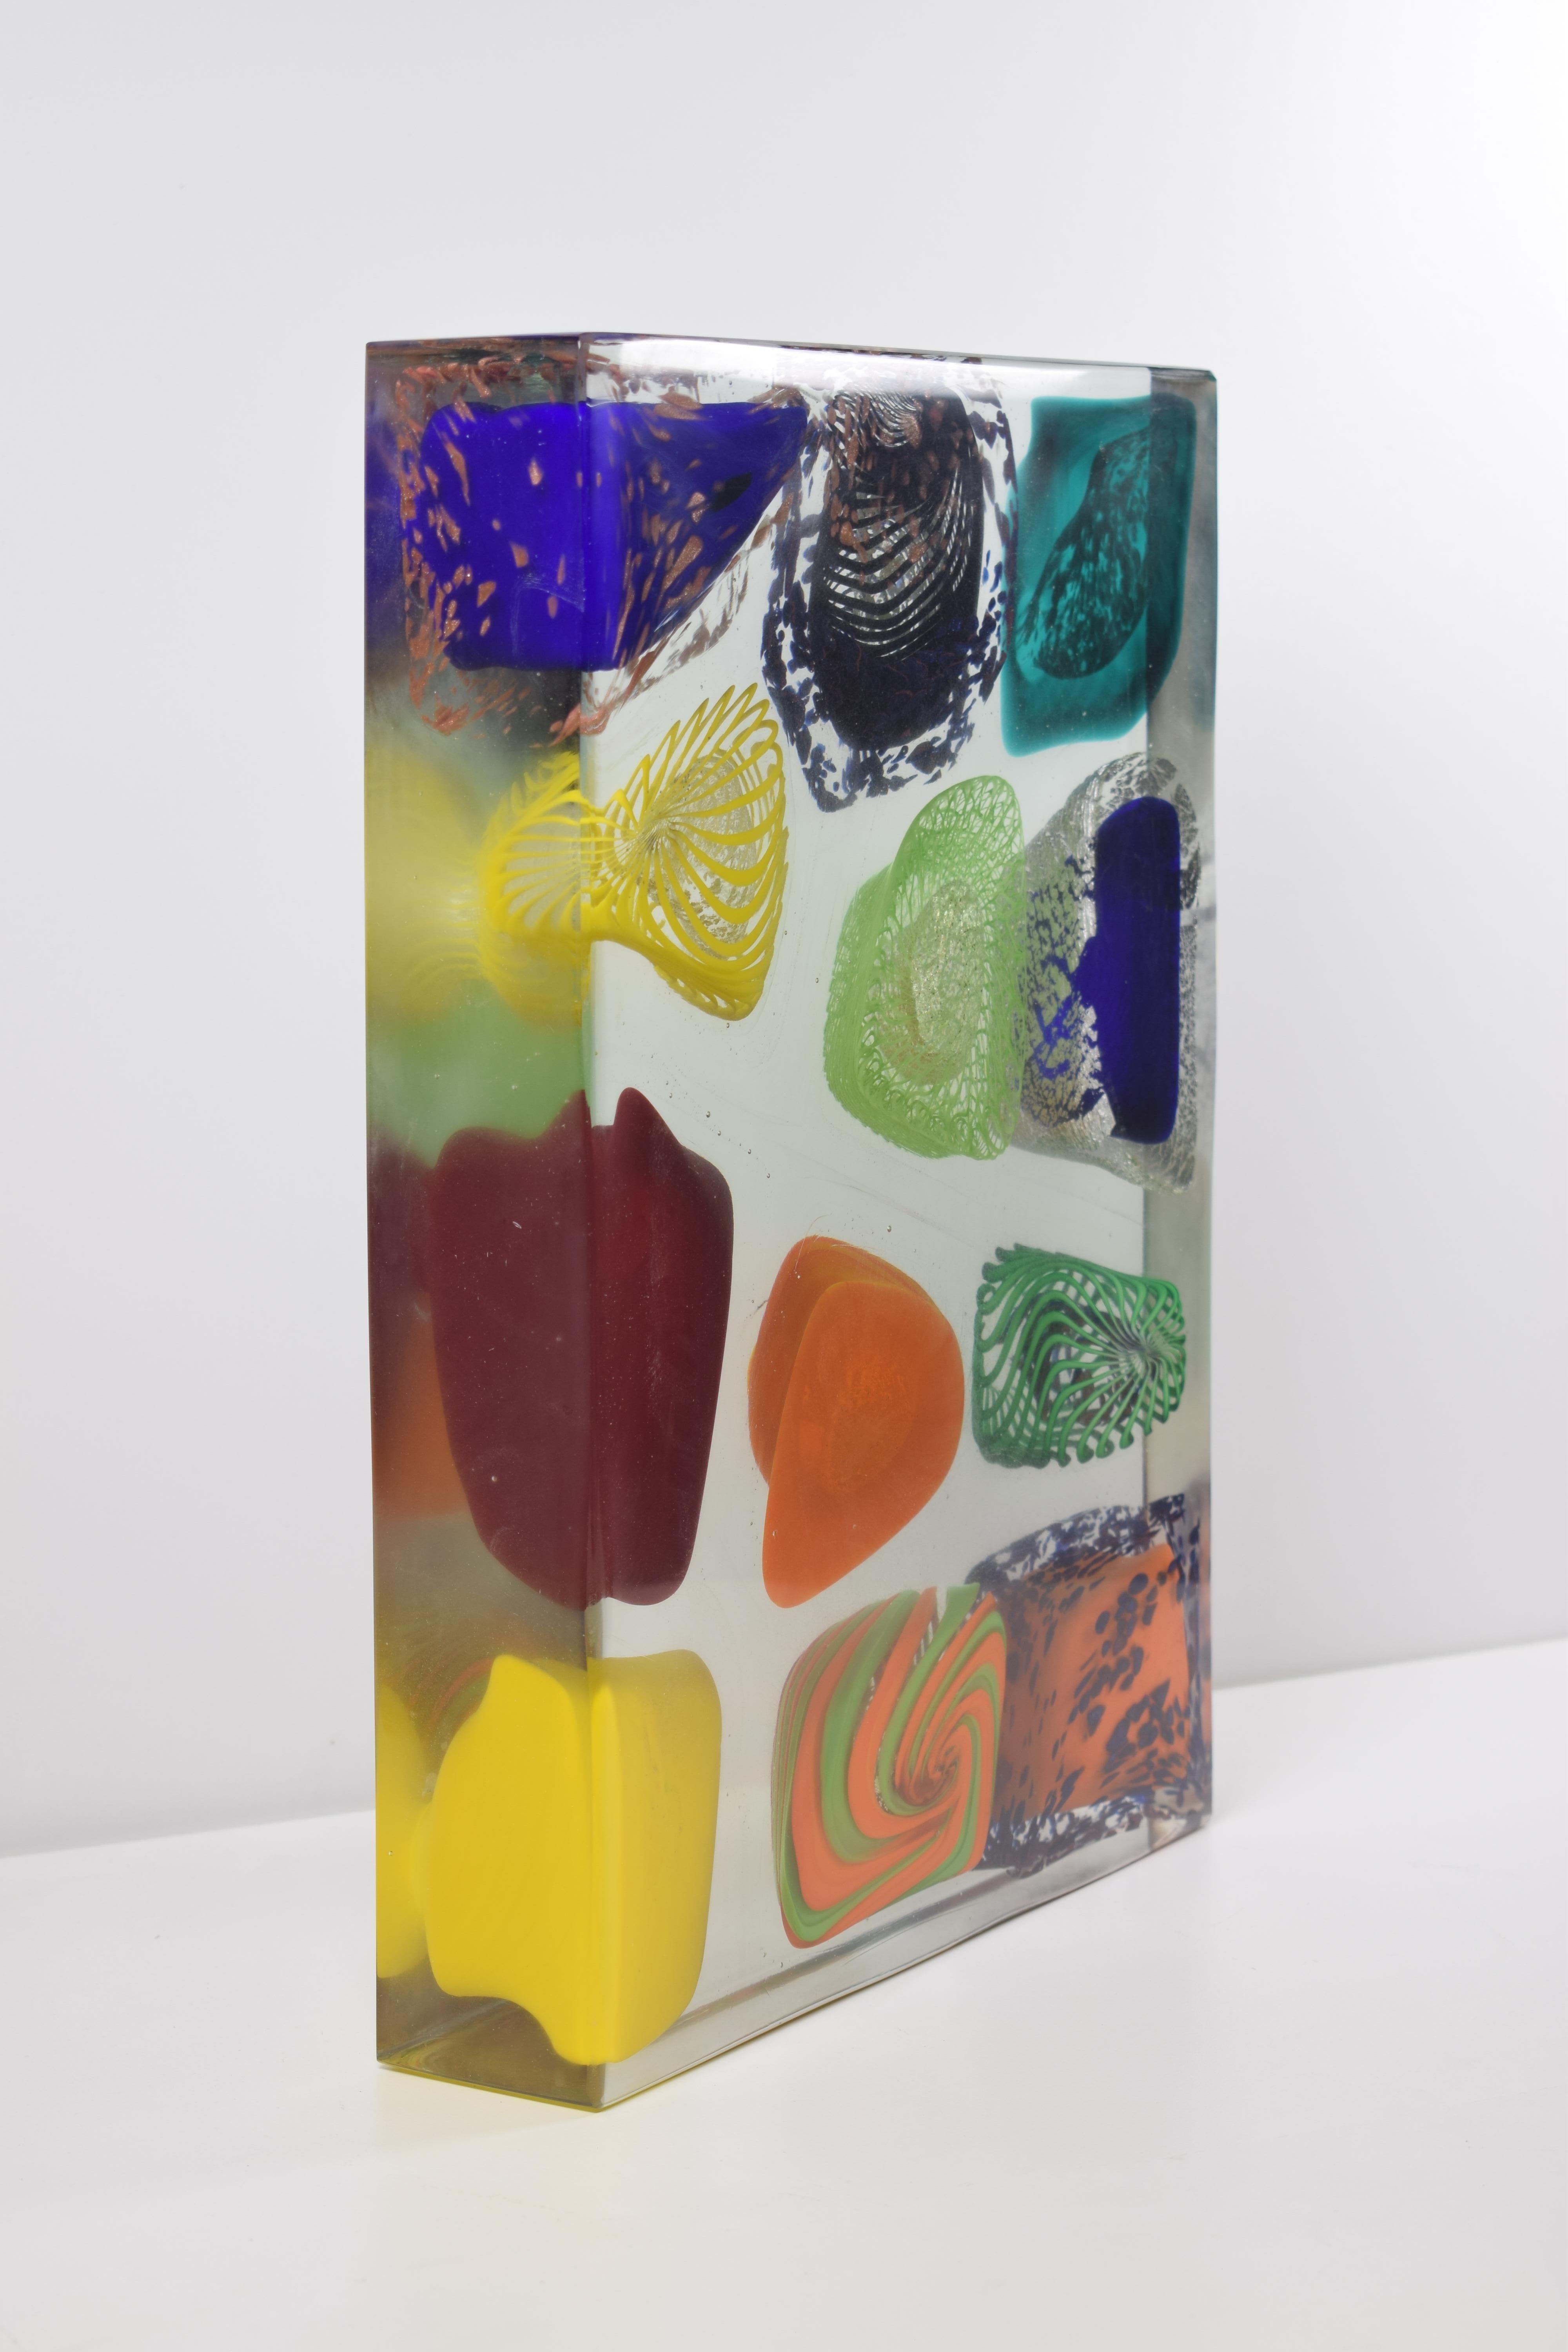 Monolithe en verre artistique de Murano. La sculpture artistique en verre de Murano est une expression créative et naturelle de l'artiste Eros Raffael, réalisée avec des tiges de verre transparent et pastel, de l'argent, de l'or pur, de l'aventurine